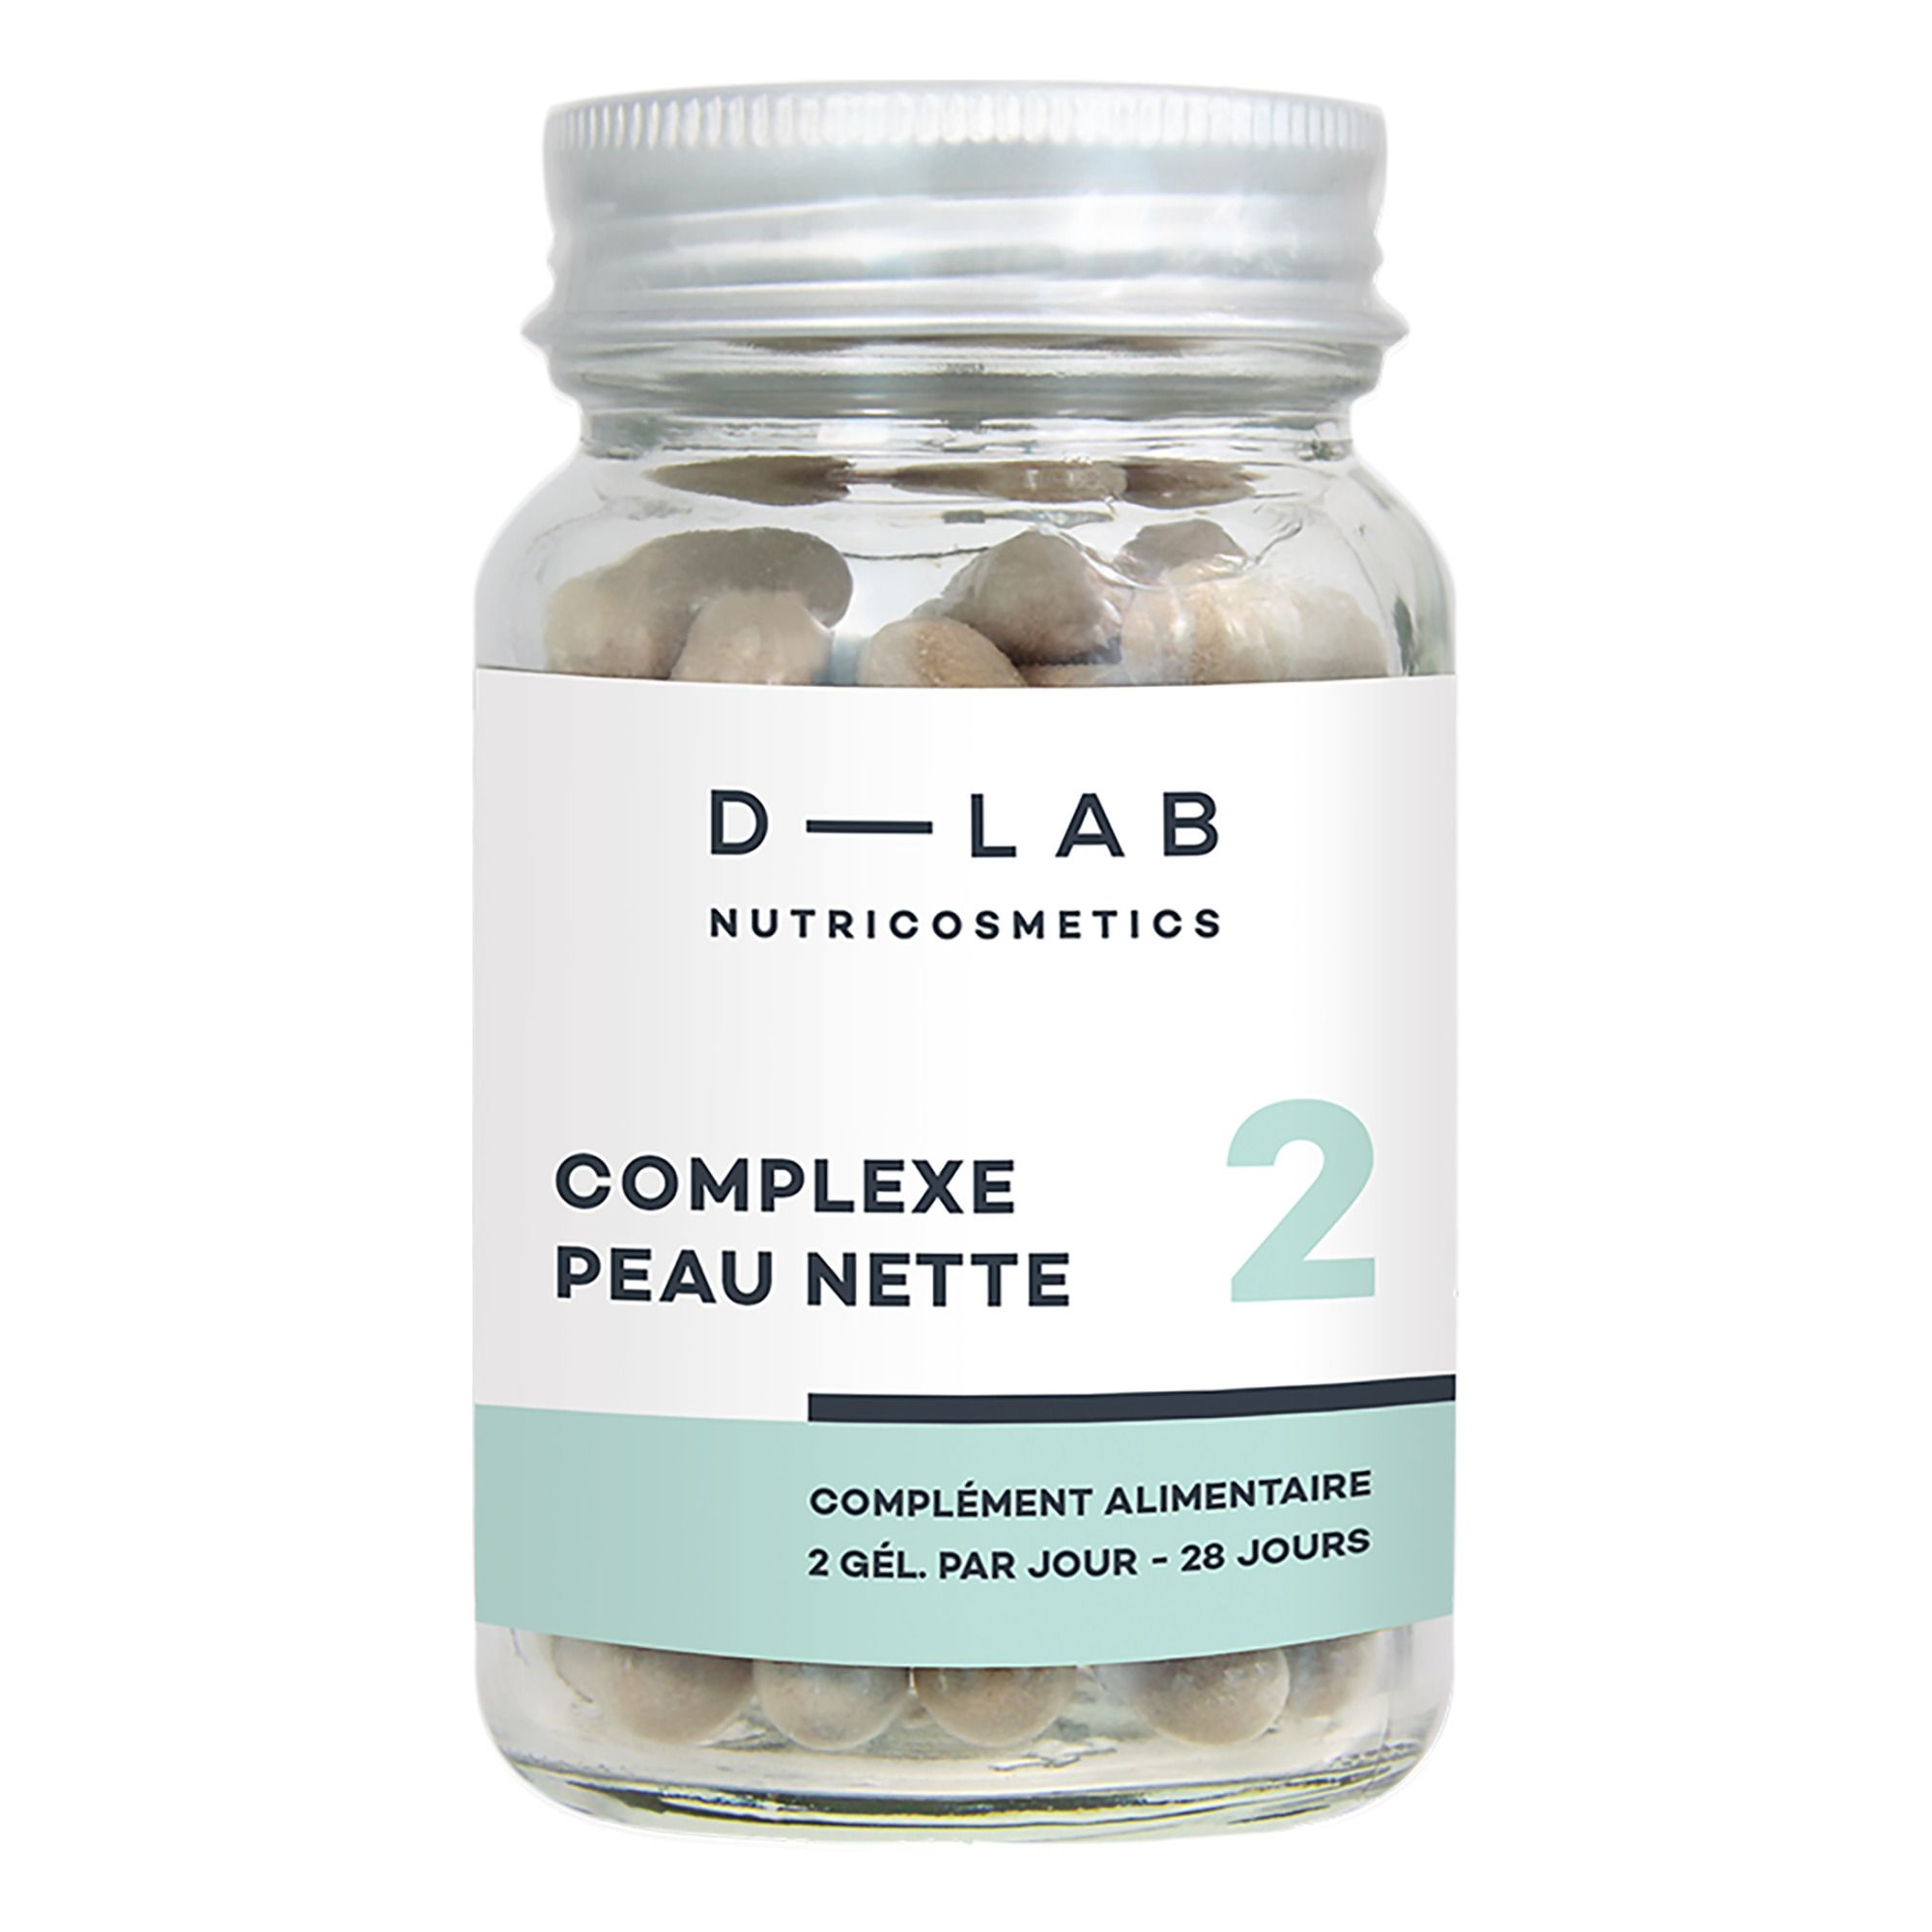 D-LAB NUTRICOSMETICS - Complexe Peau Nette - 3 mois - Blanc